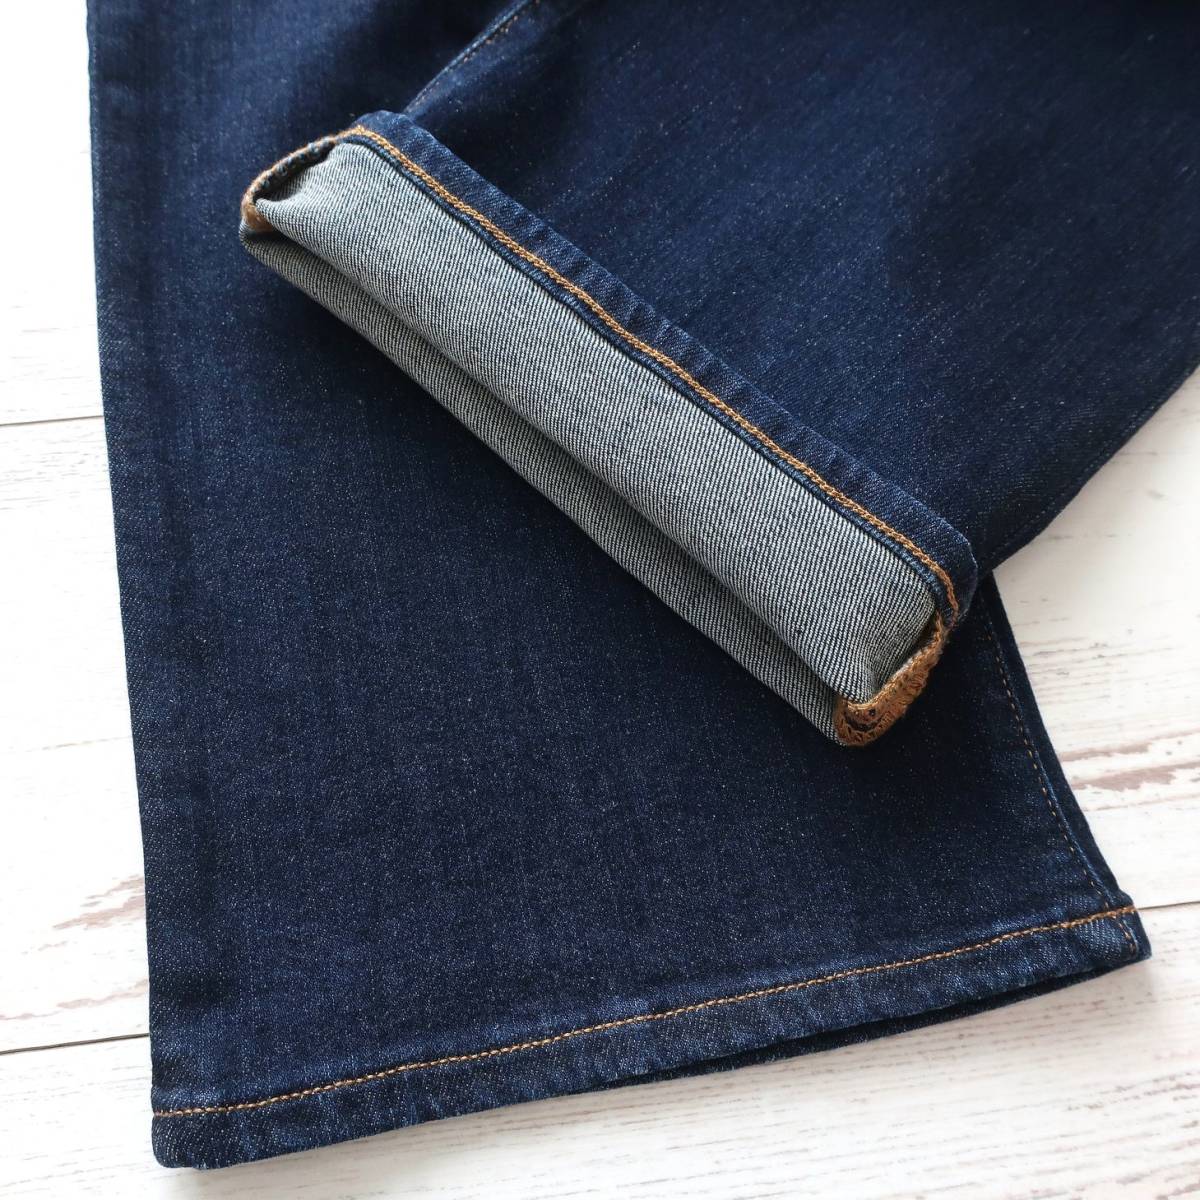  новый товар EMPORIO ARMANI постоянный Fit J21 джинсы Denim стрейч распорка индиго голубой Emporio Armani W29 S размер 